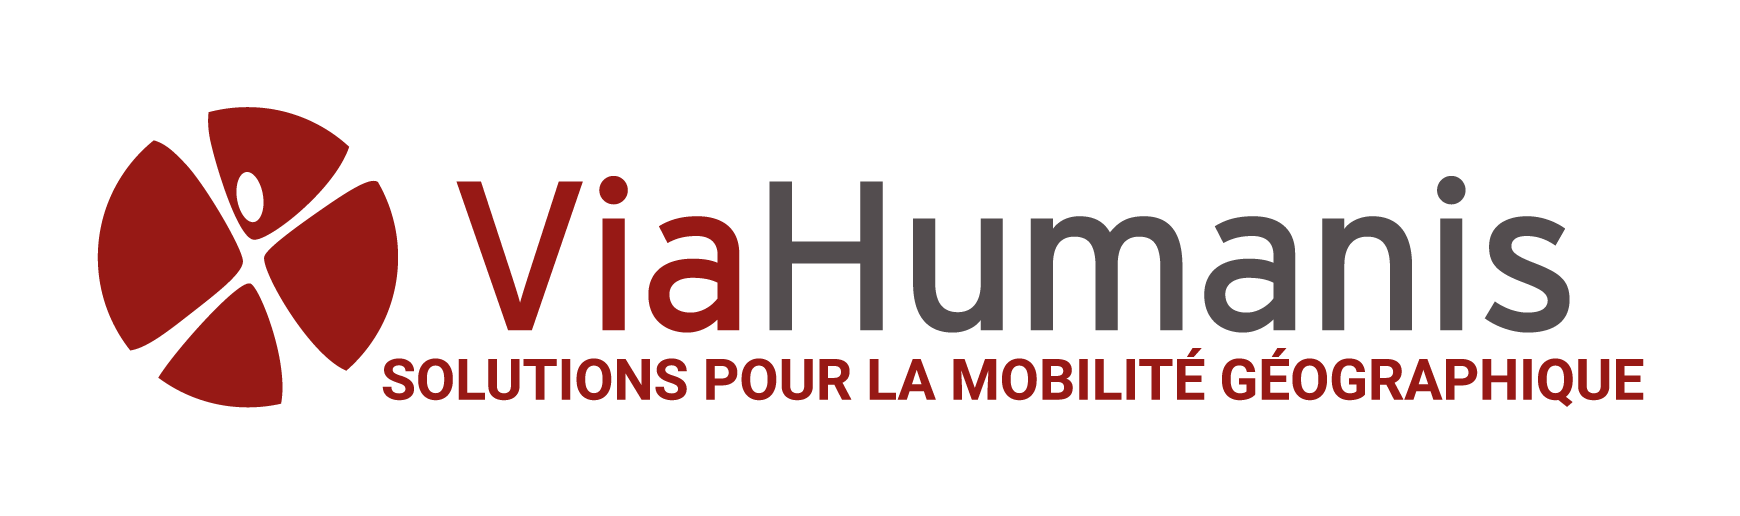 Agence de relocation | Via Humanis Paris